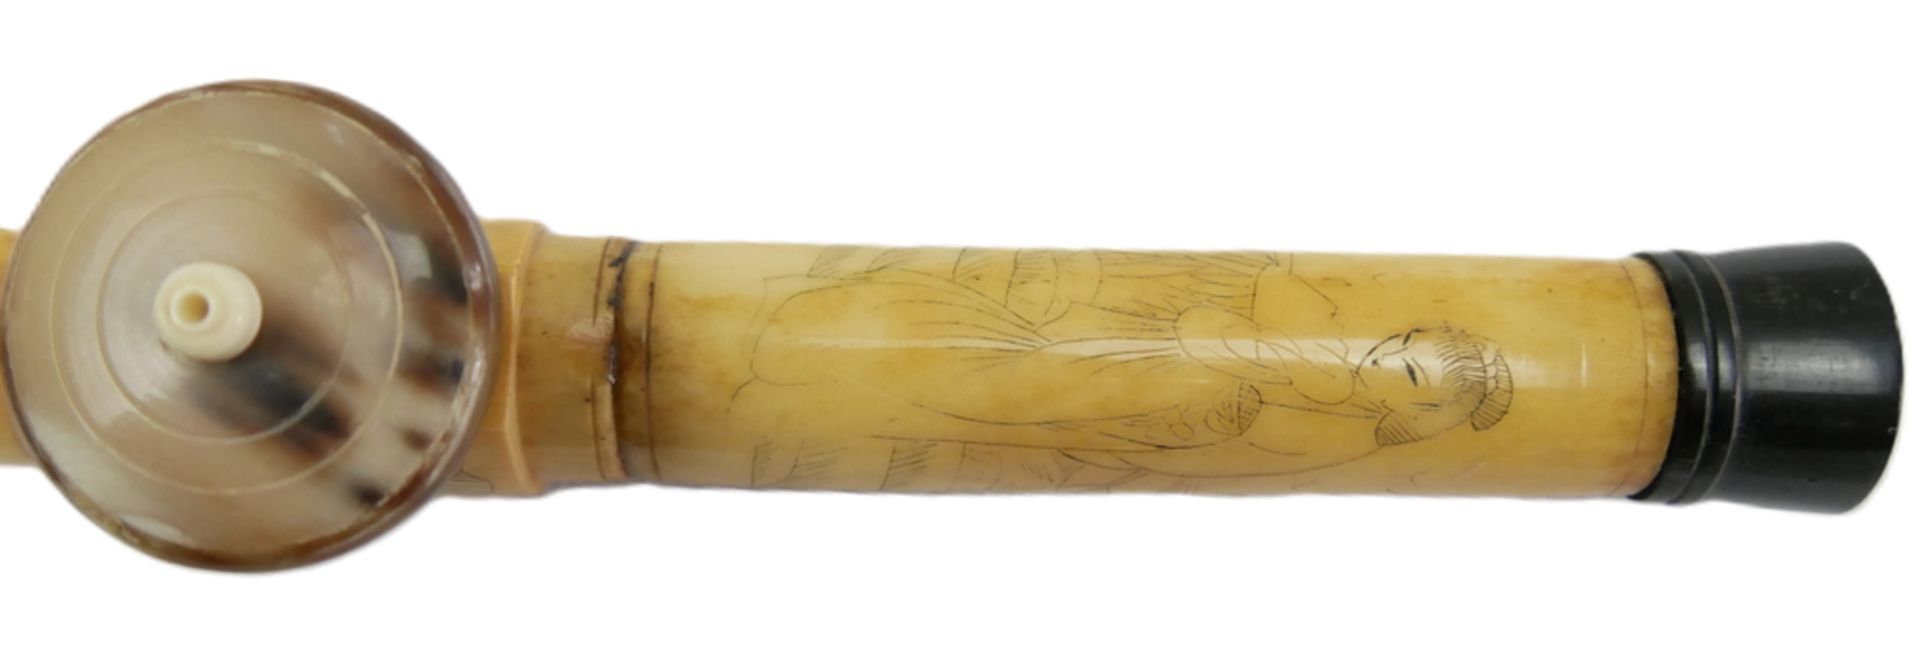 Chinesische Opiumpfeife aus Knochen, geschnitzt und verziert mit Geishas und Landschaften. Länge ca. - Bild 3 aus 3